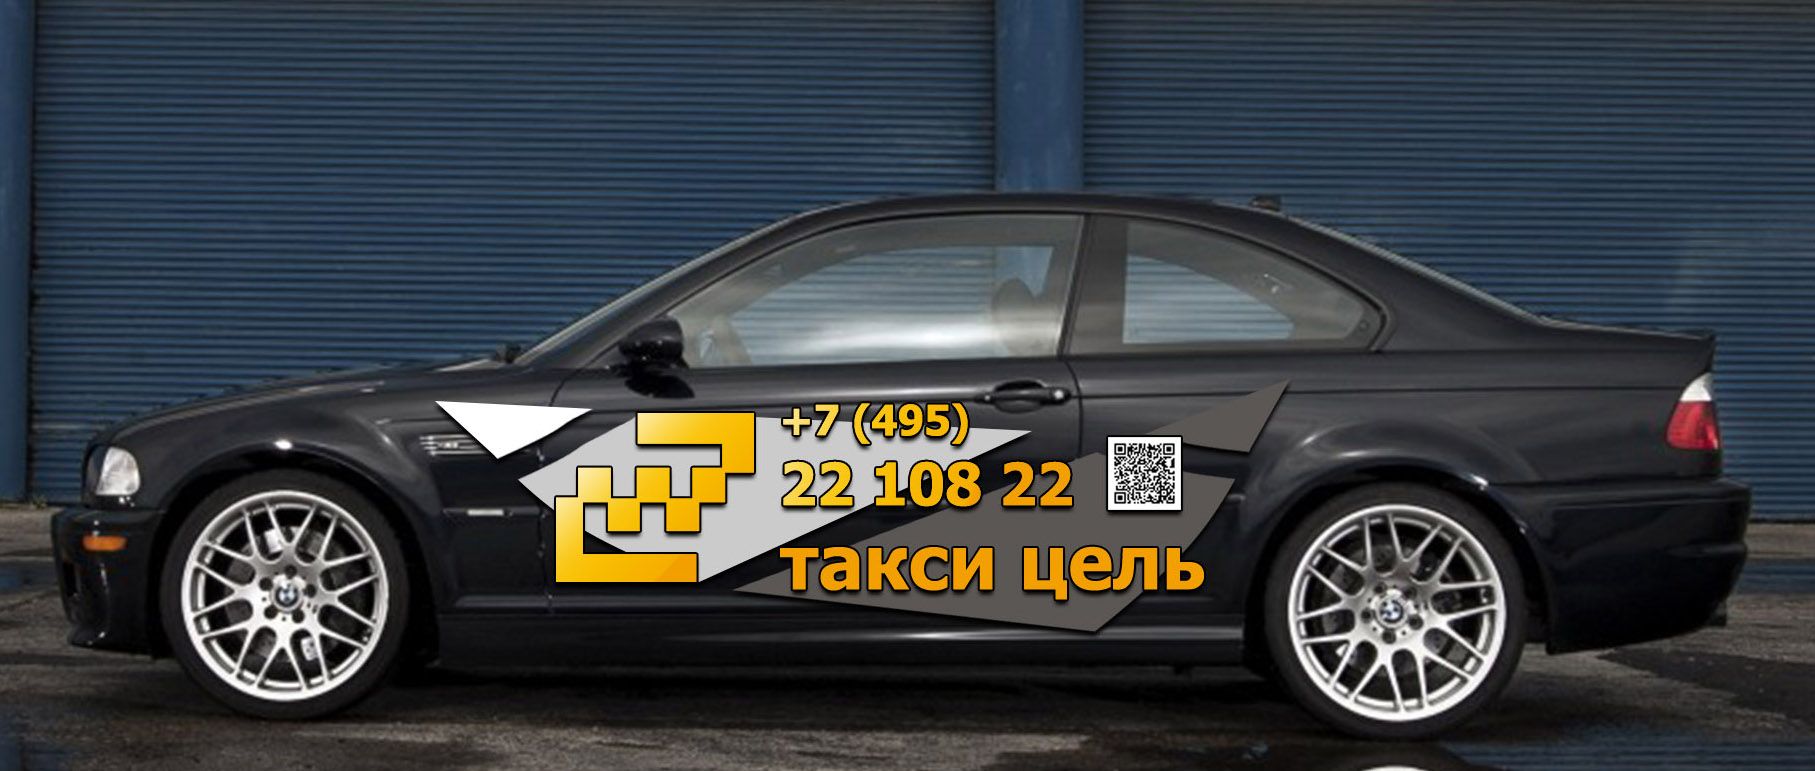 Рекламное оформление автомобиля такси - дизайнер ilyaweb